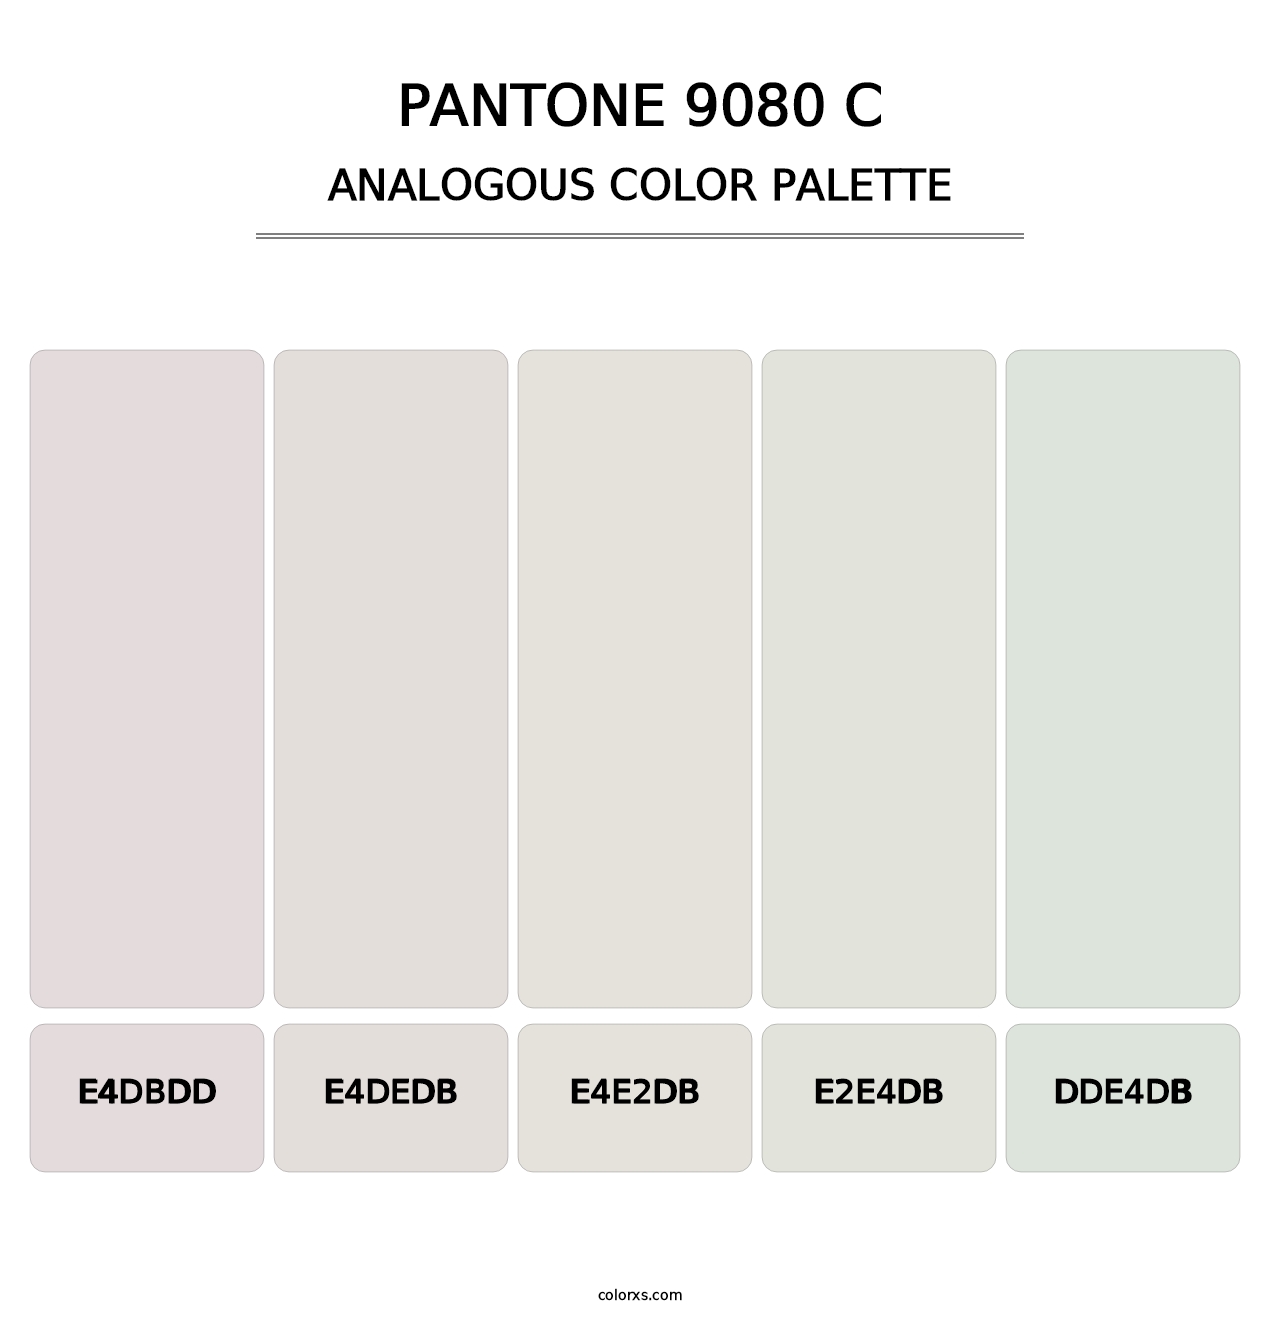 PANTONE 9080 C - Analogous Color Palette